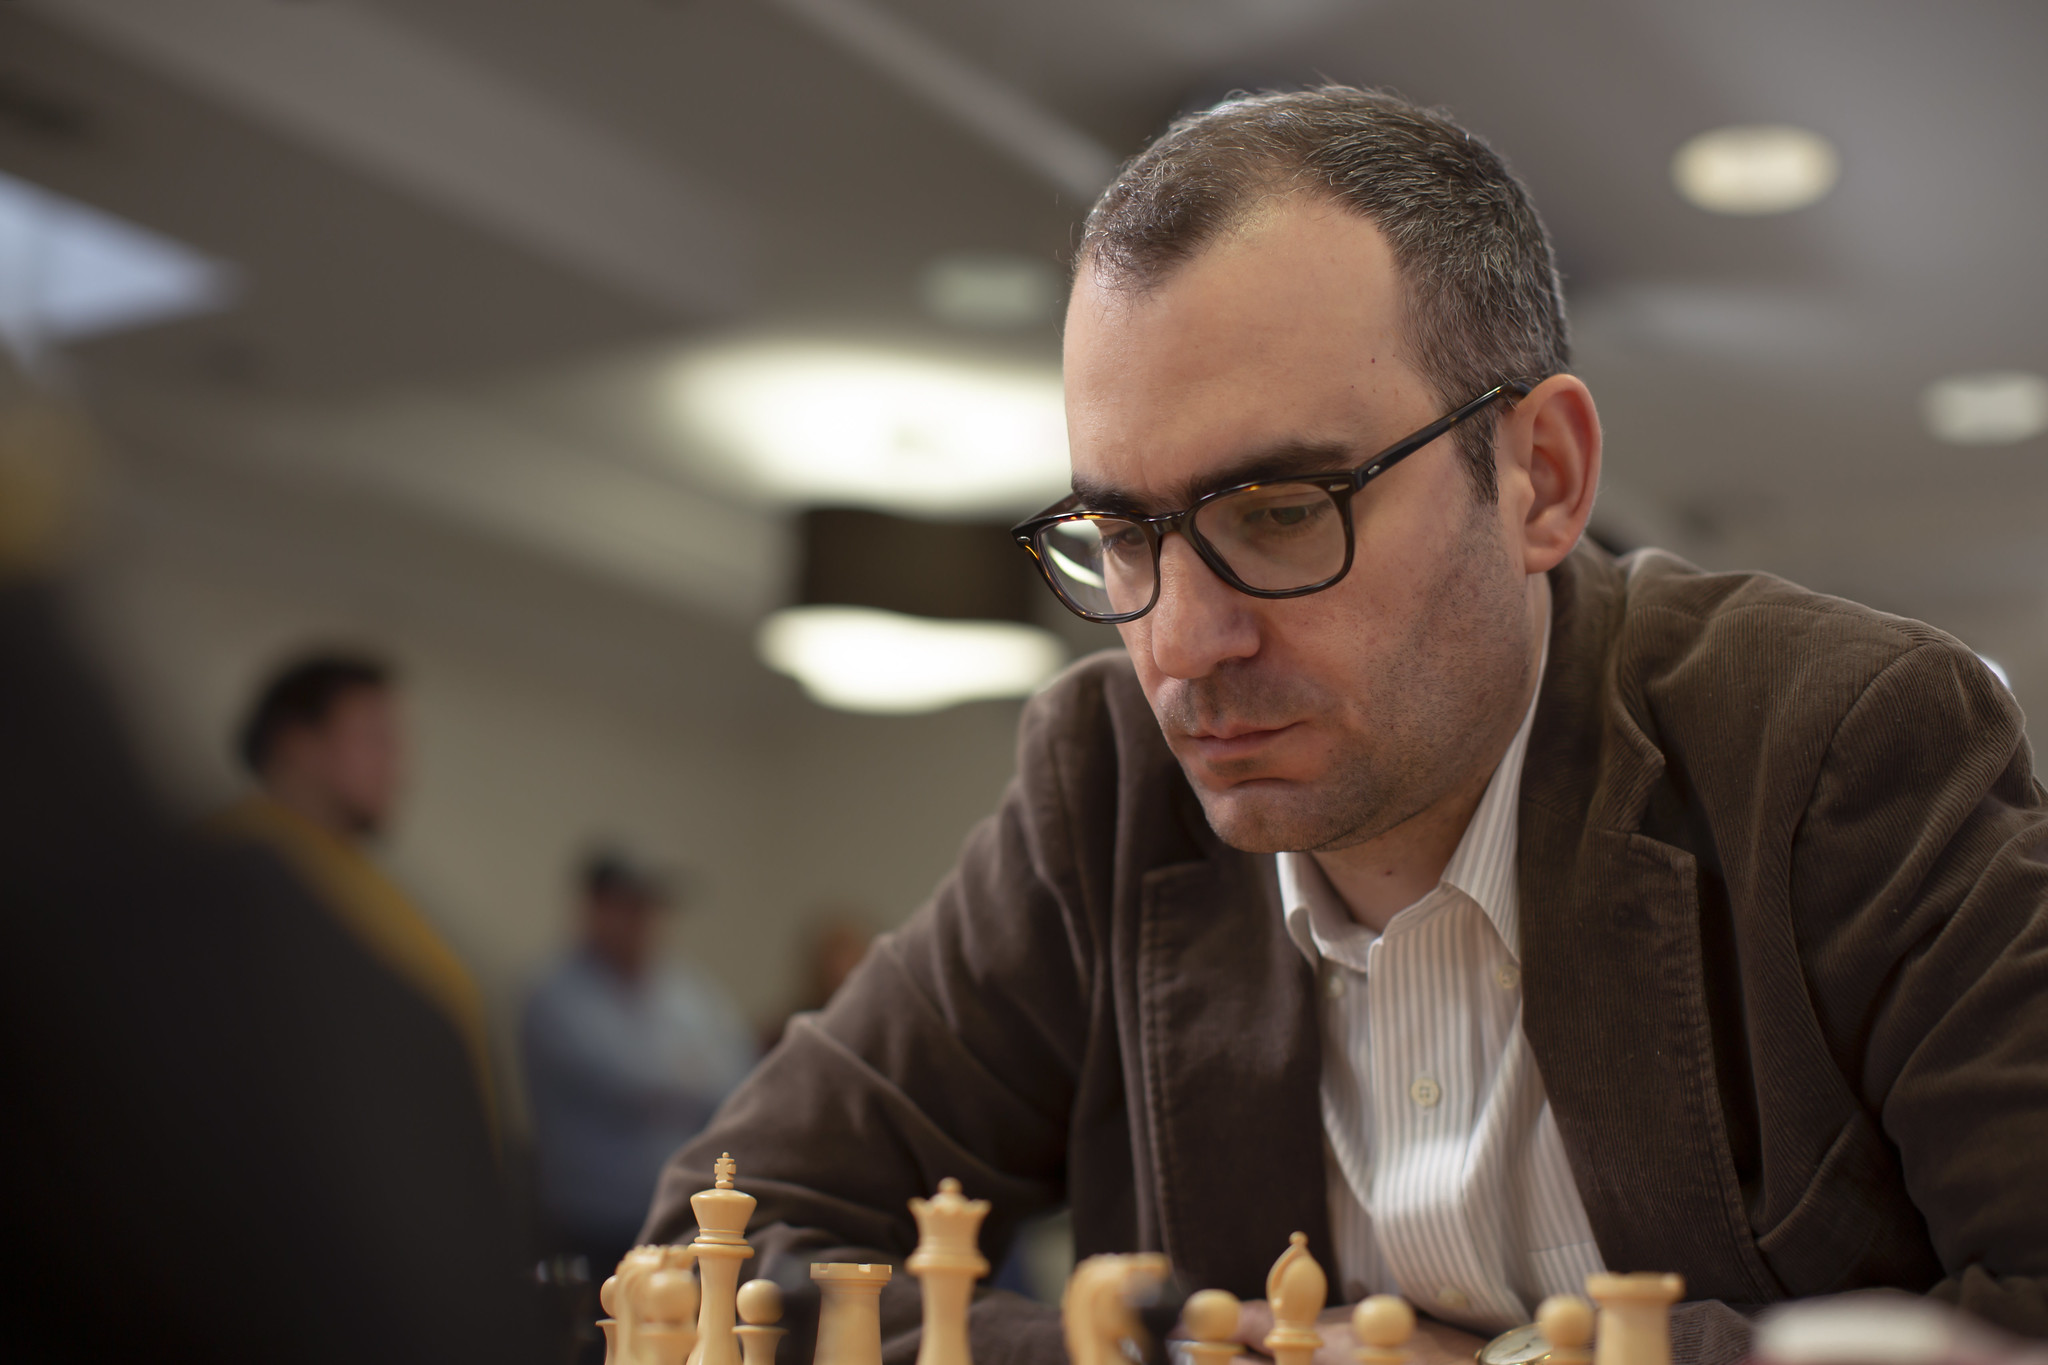 Grandmaster Cubano Da Xadrez, Lenier Domínguez Pérez 3 Imagem de Stock  Editorial - Imagem de homem, campeonato: 12001189